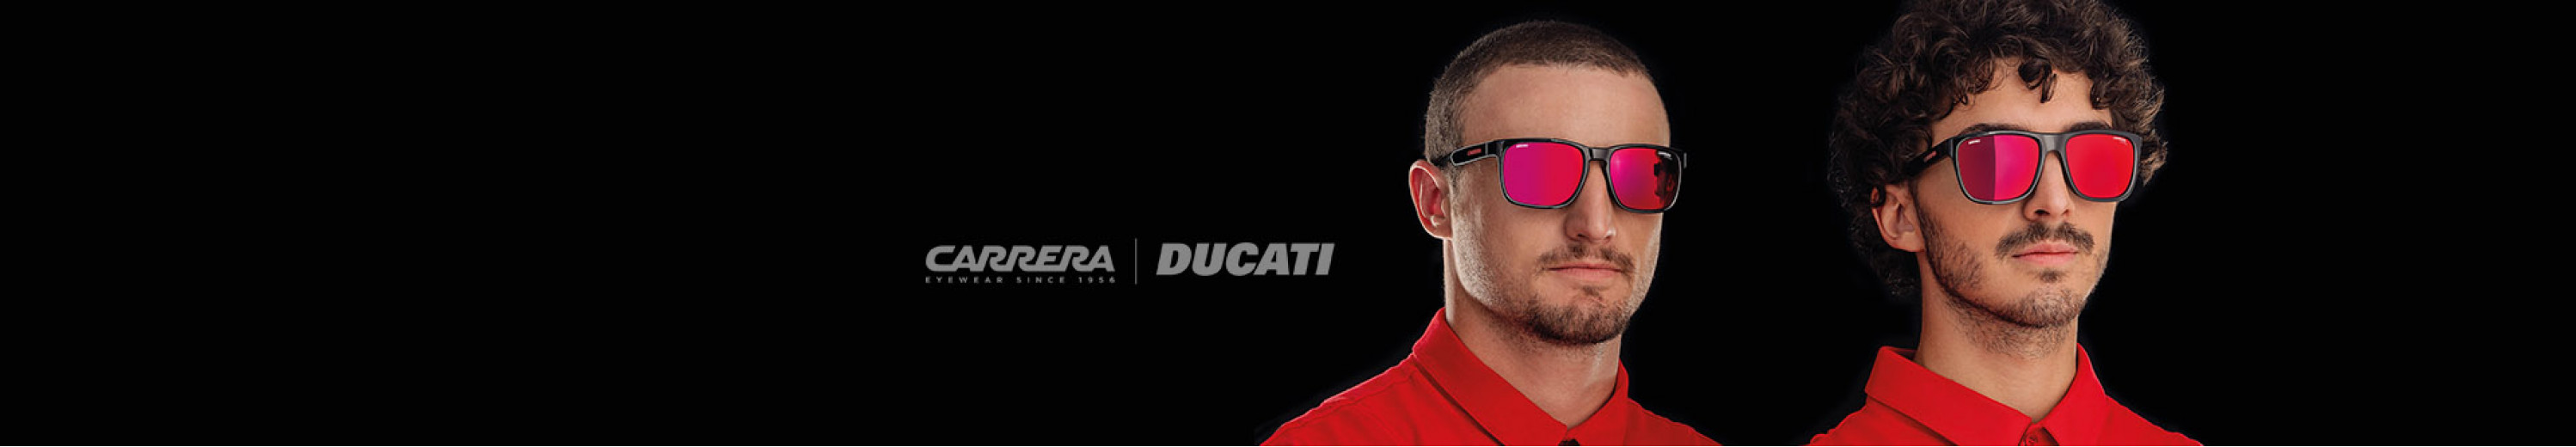 Carrera Ducati Eyewear Collection